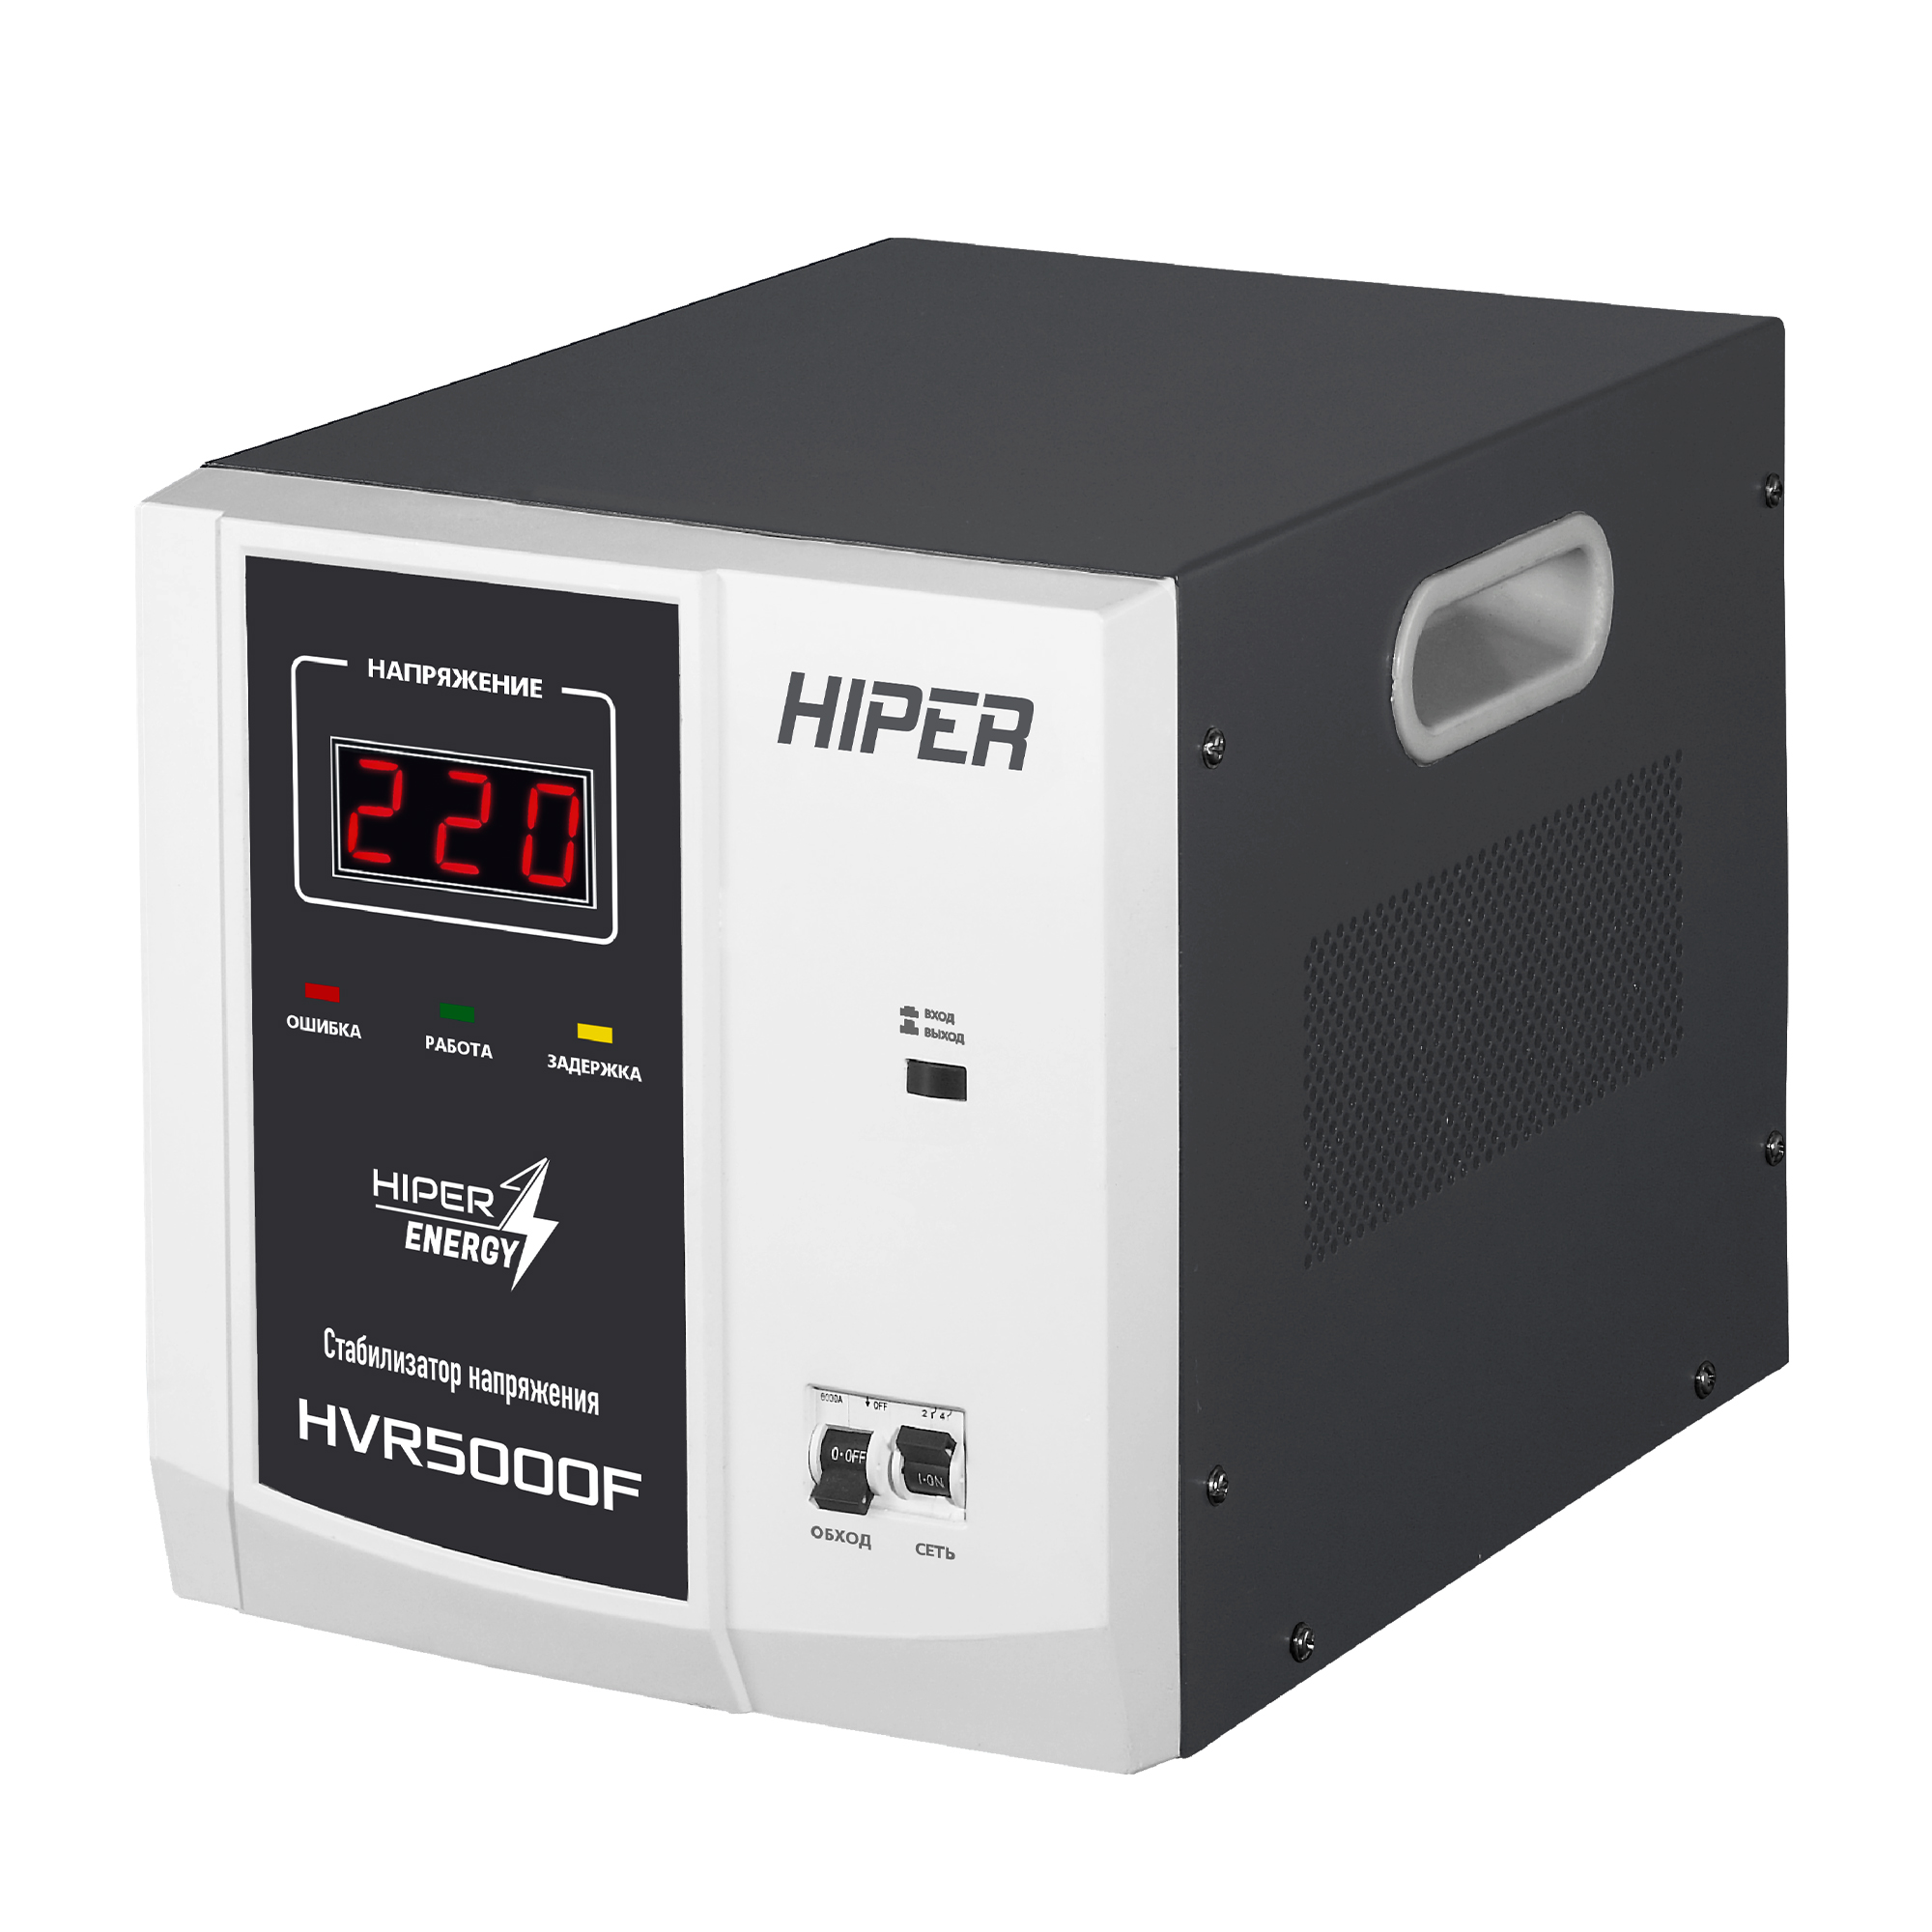 Стабилизатор напряжения Hiper HVR5000F, 5000 VA, 4 кВт, клеммная колодка, черный/серый